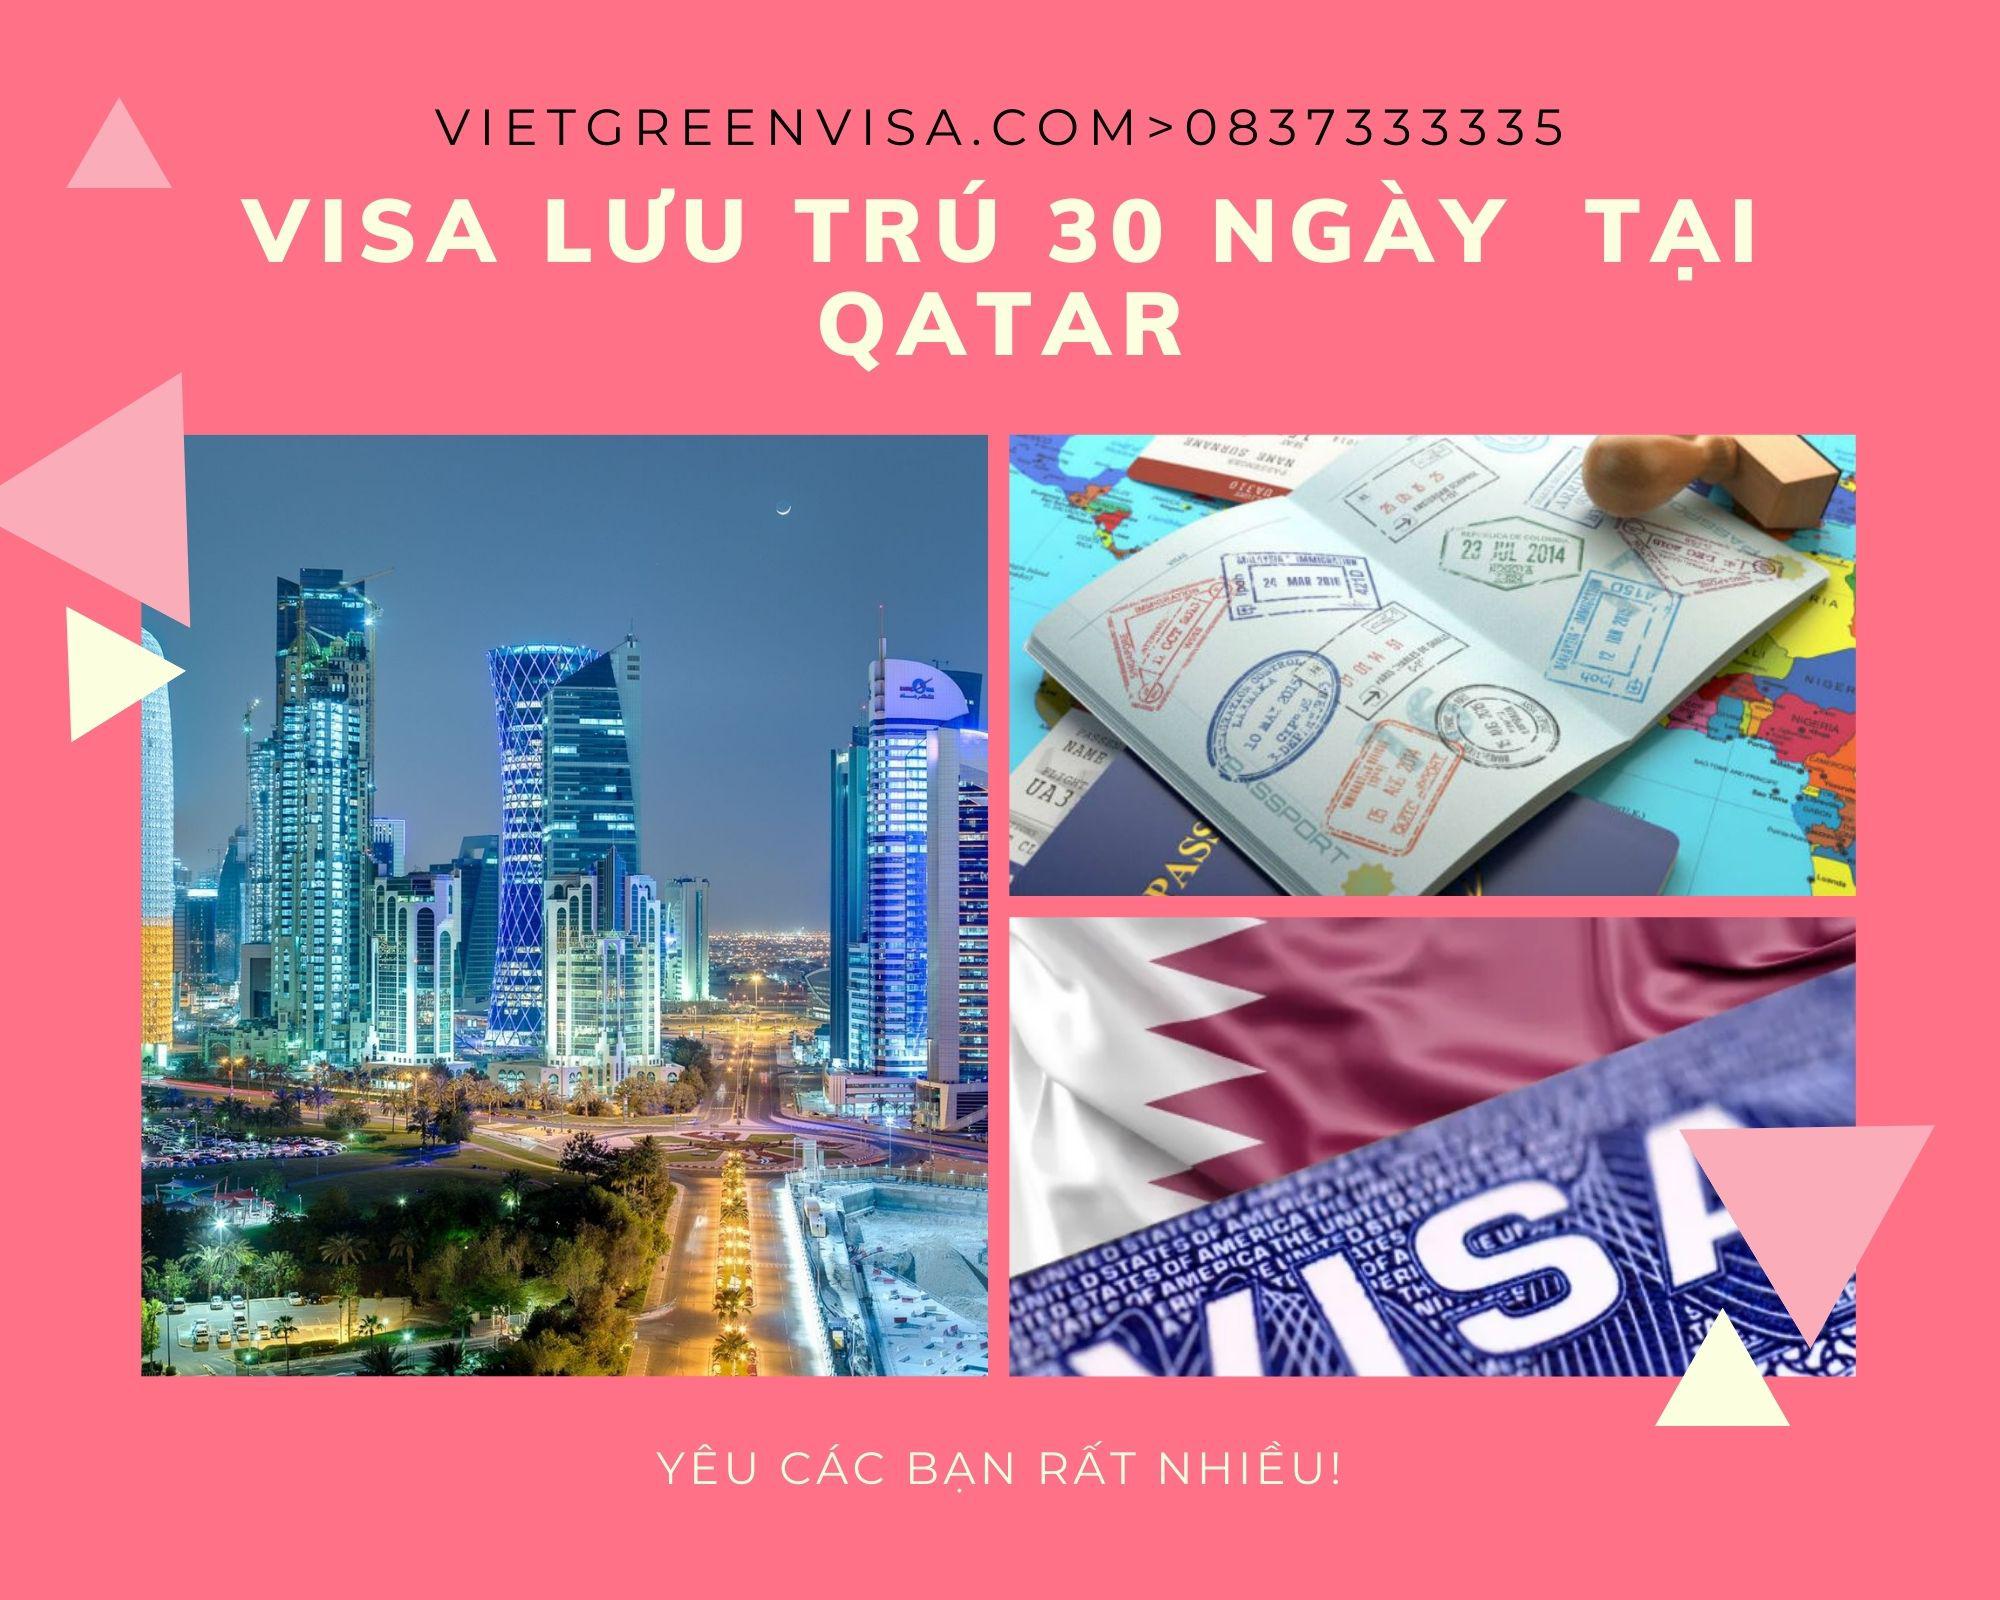 Dịch  vụ visa Qatar lưu trú 30 ngày tại Hà Nội, Hồ Chí Minh